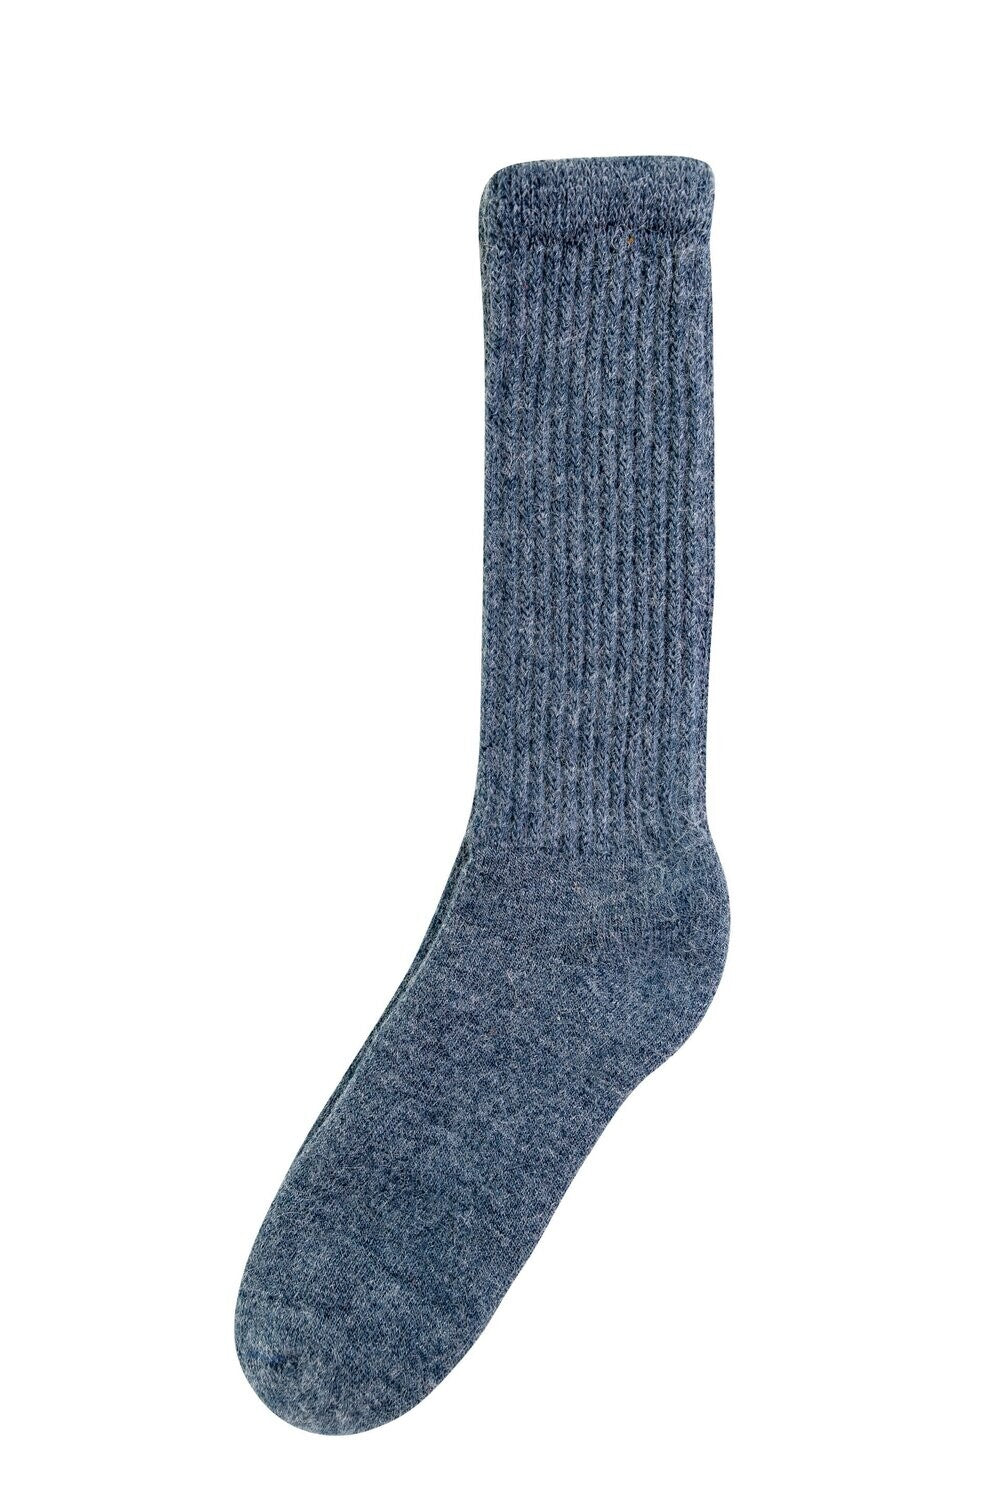 Mens Alpaca Socks - Comfort